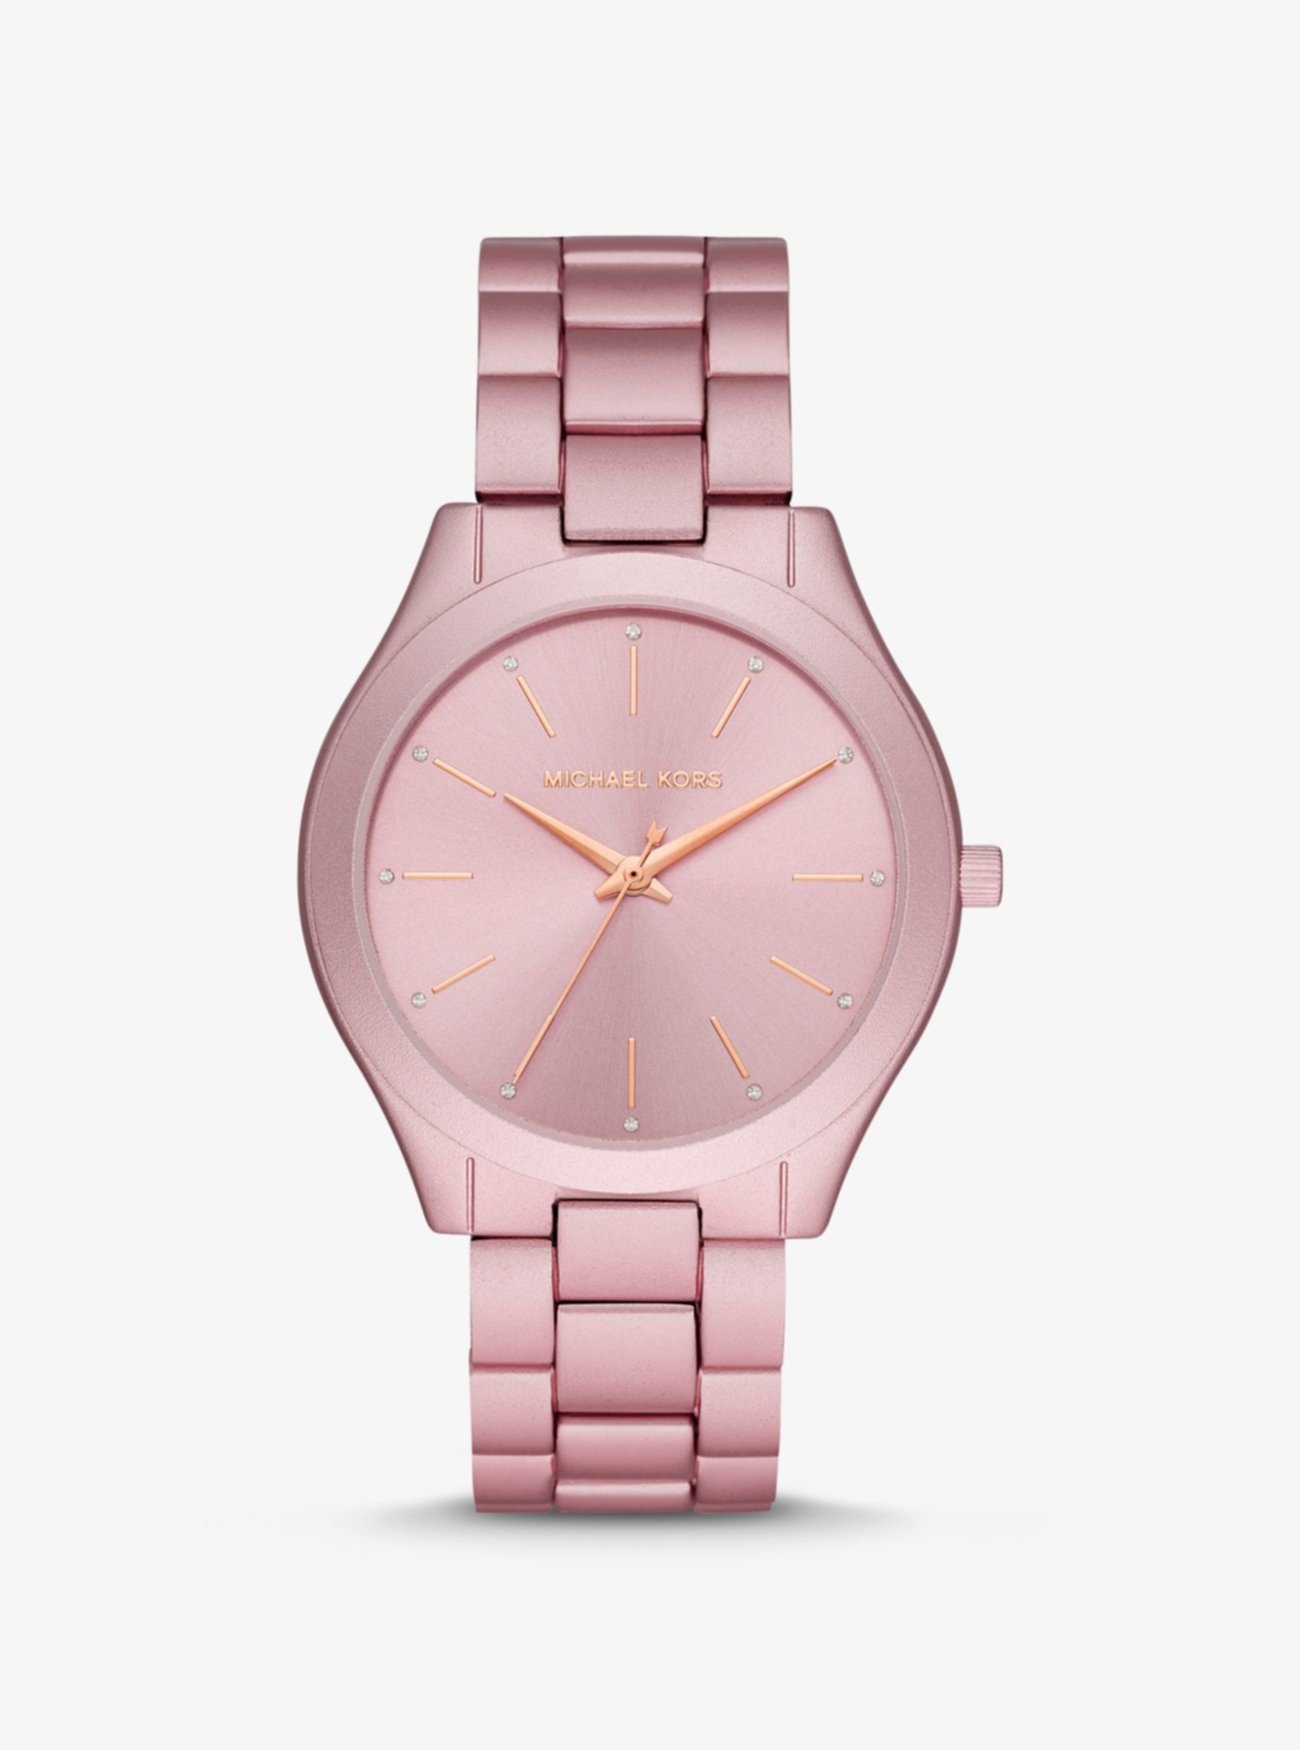 Узкие узкие розовые алюминиевые часы Runway Michael Kors